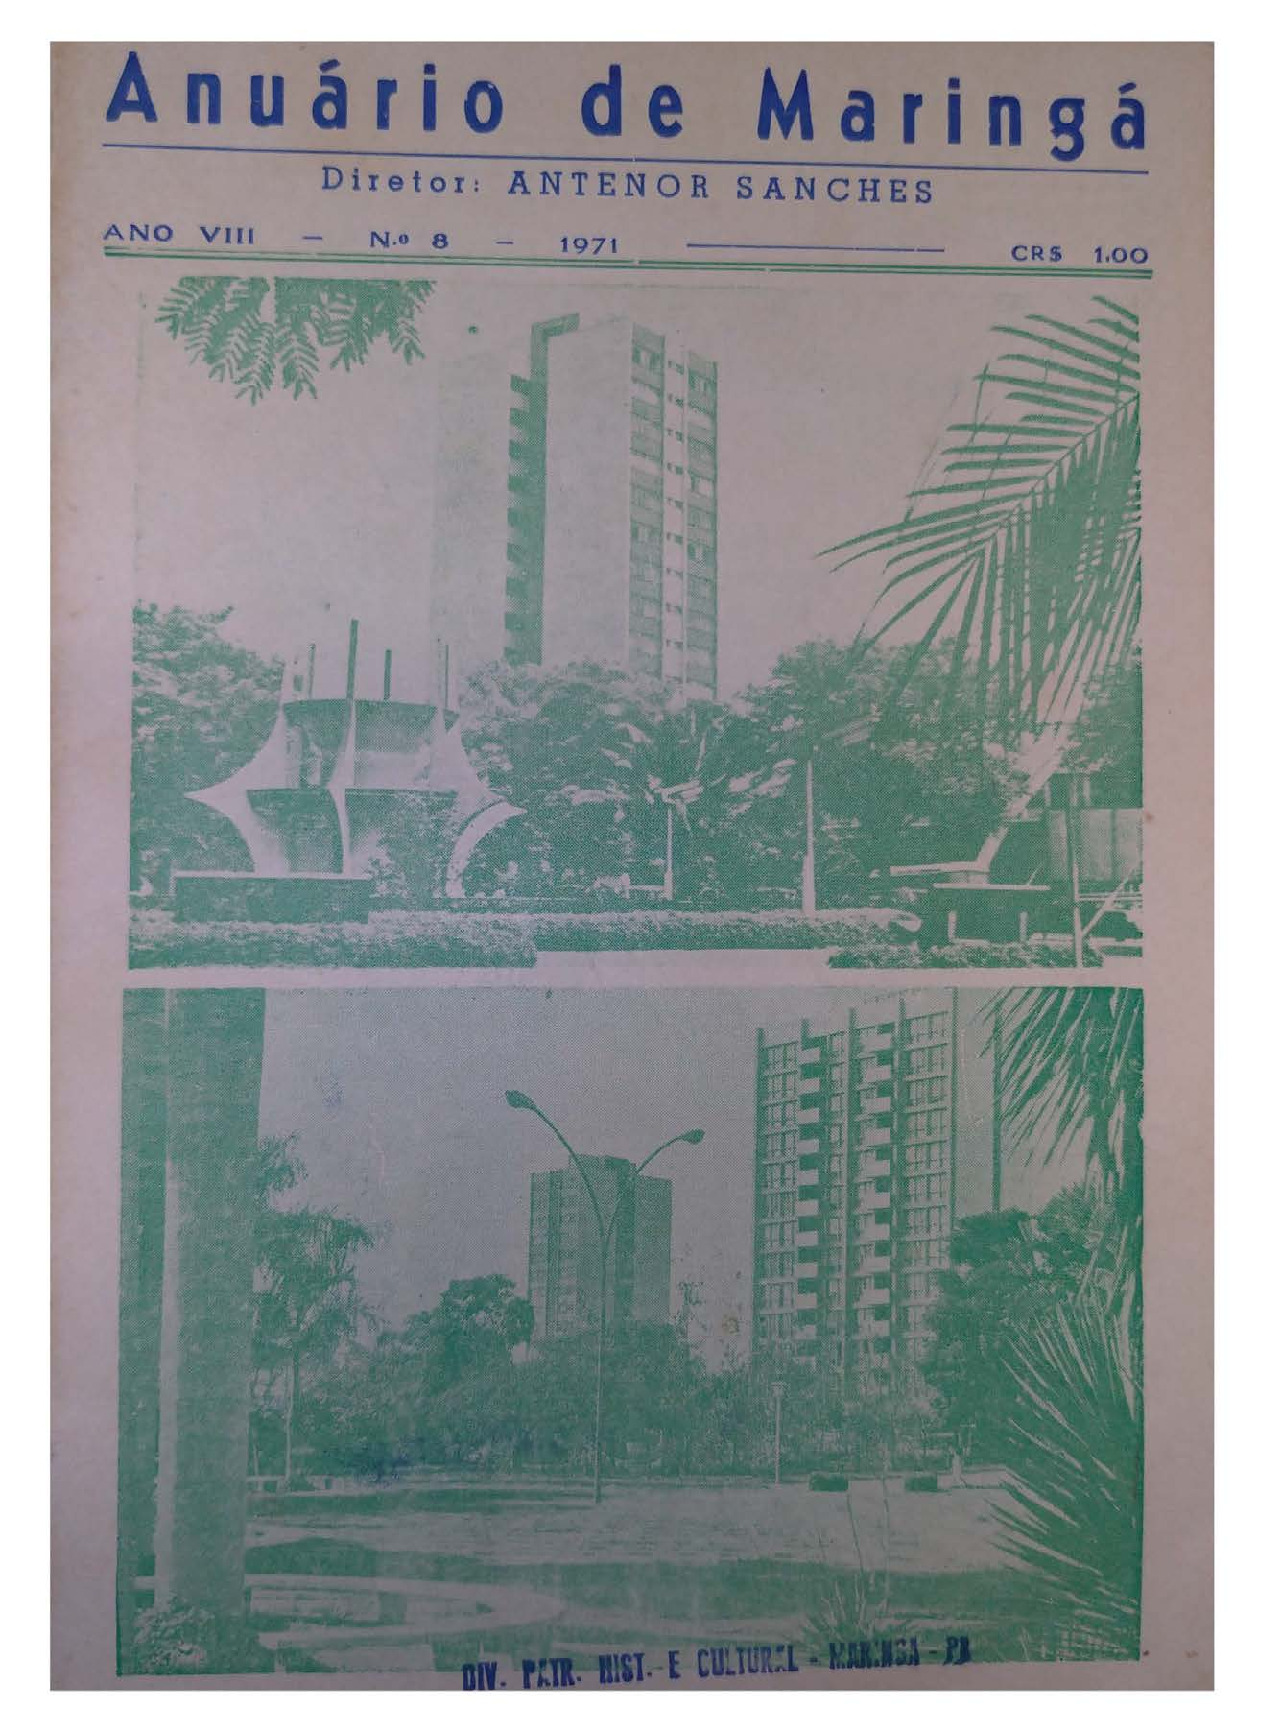 Anuário de Maringá - 1971